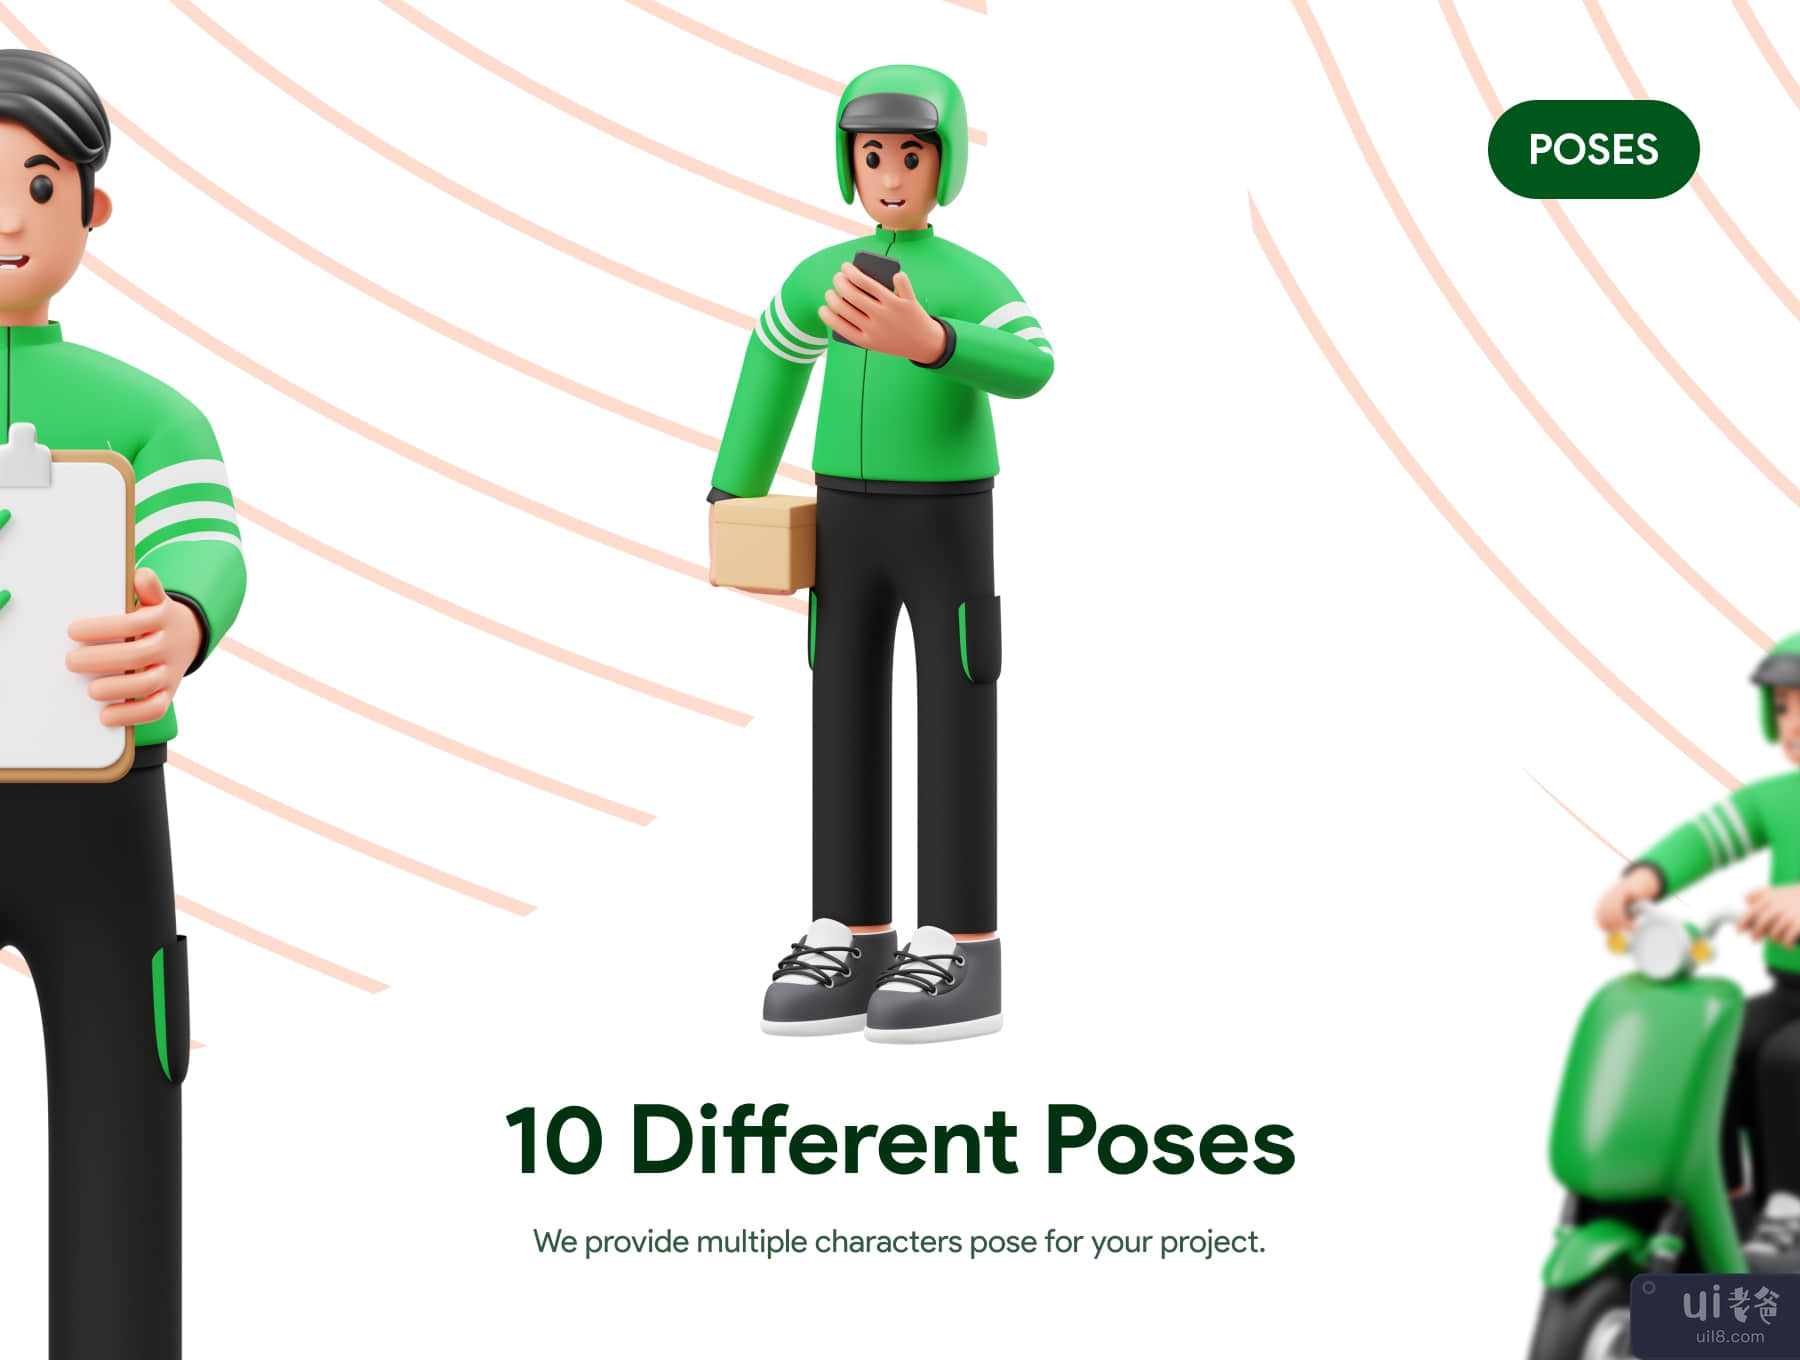 快递员》3D 角色插画 (Delivery Courier 3D Character Illustration)插图2